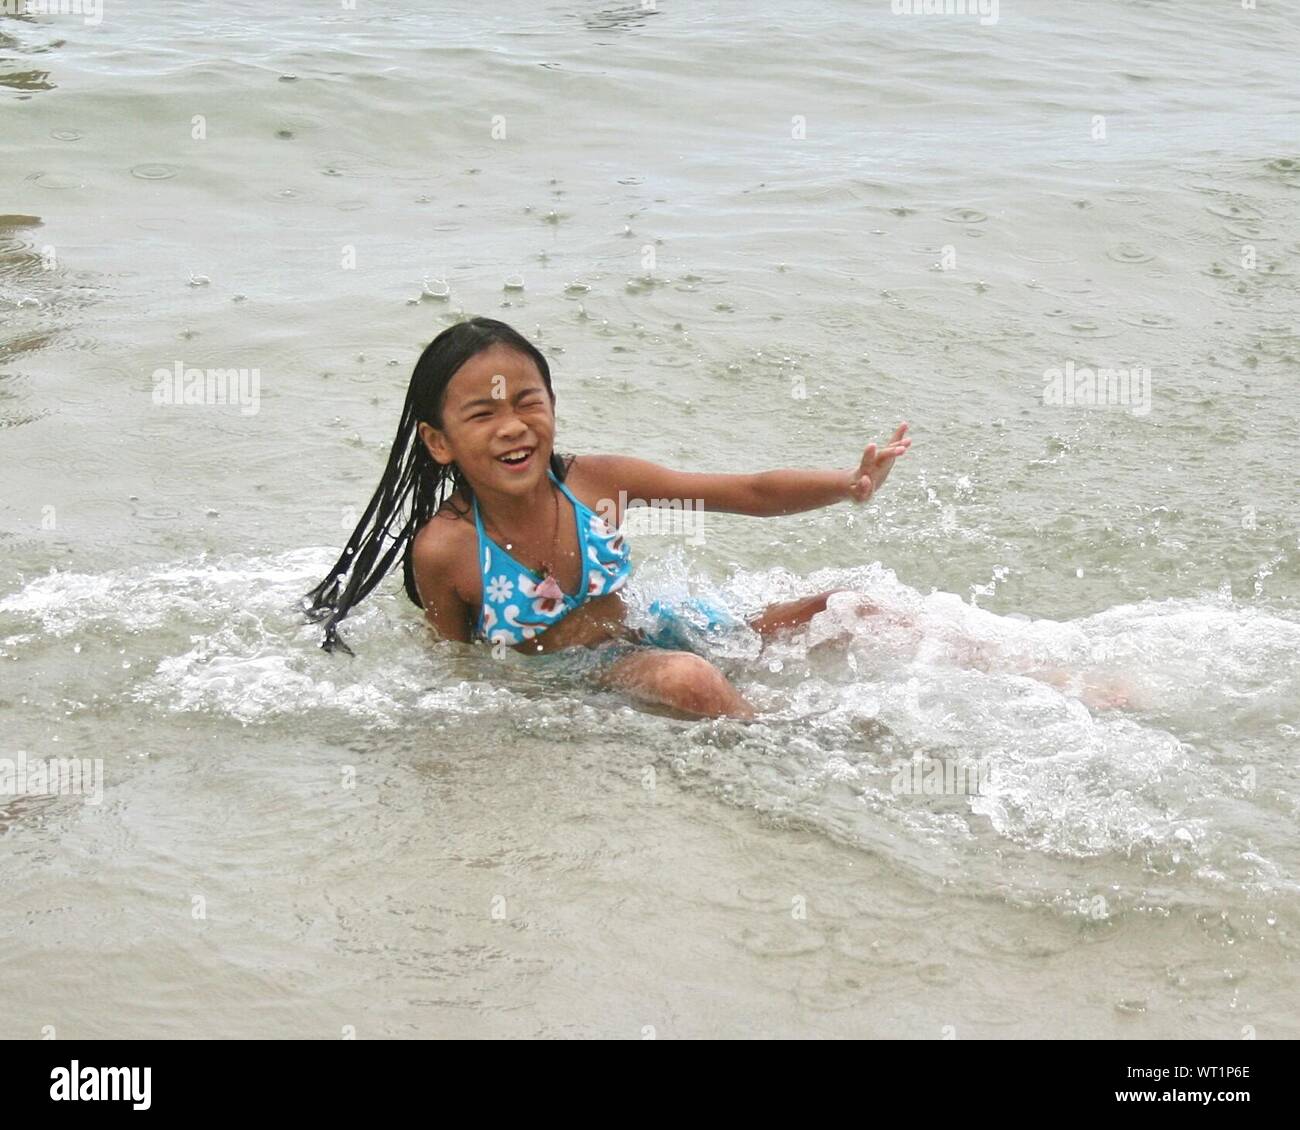 Cheerful Teenage Girl Playing In Sea Stock Photo